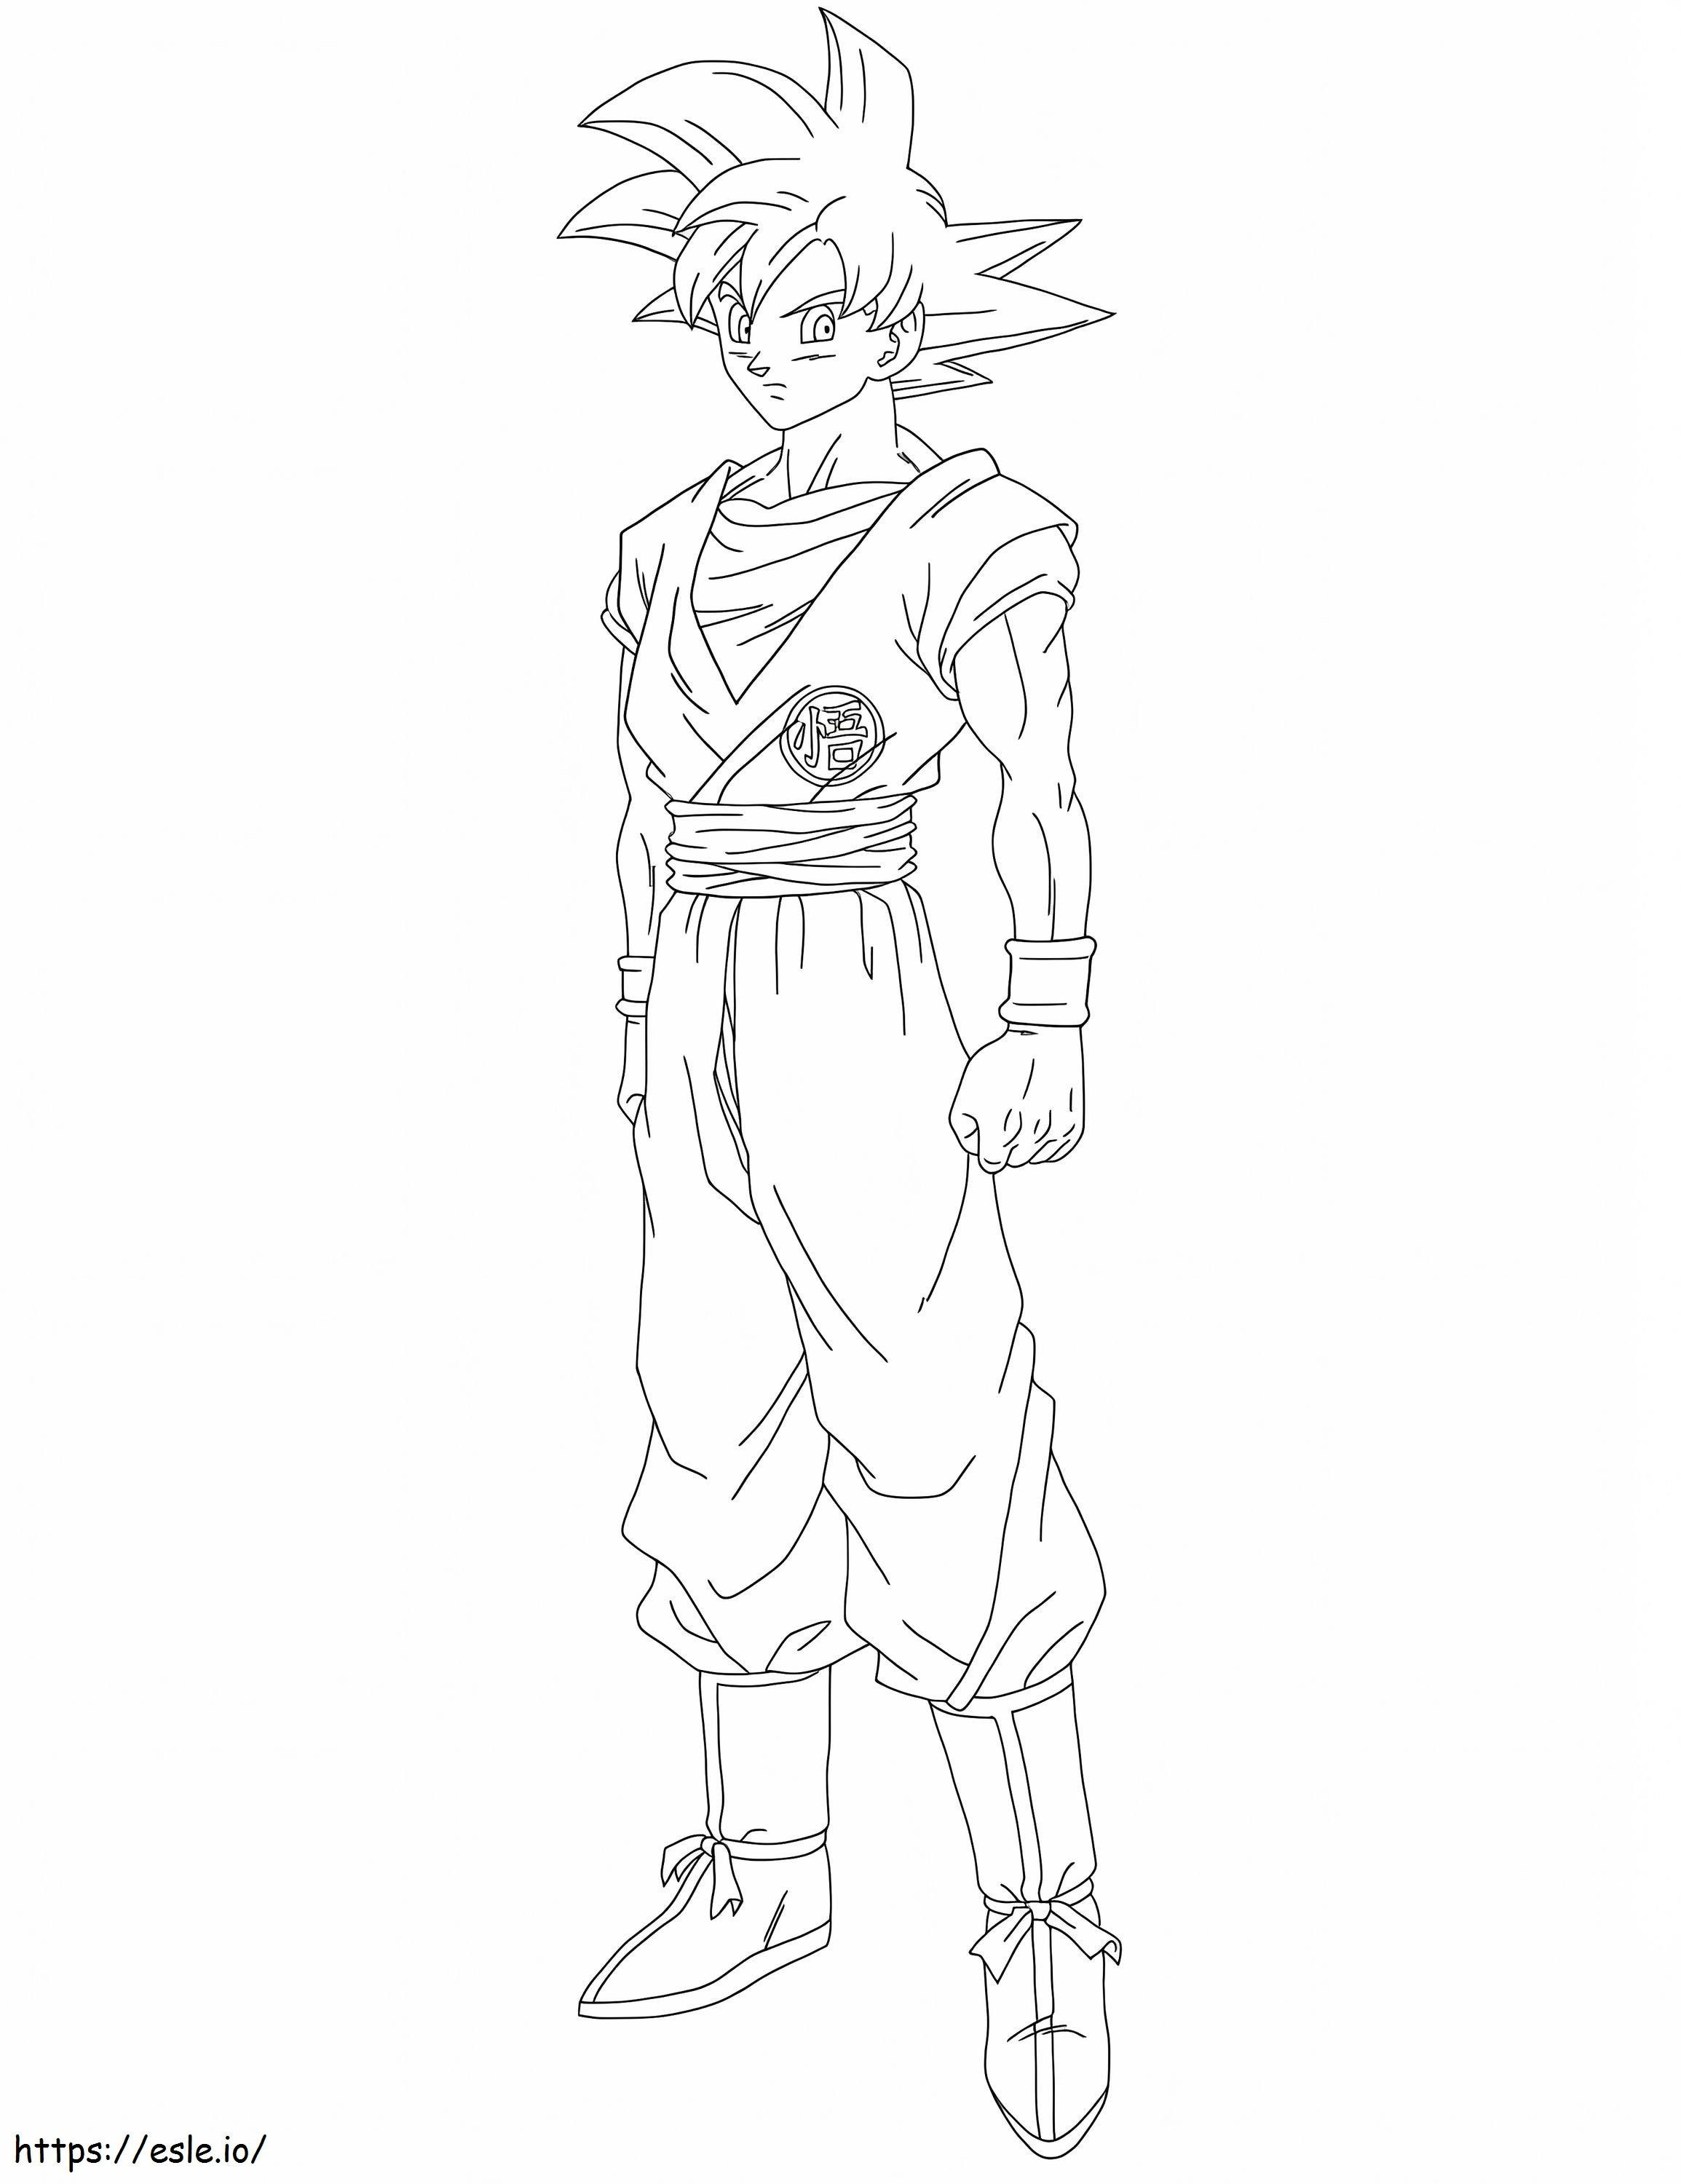 Son Goku în picioare de colorat